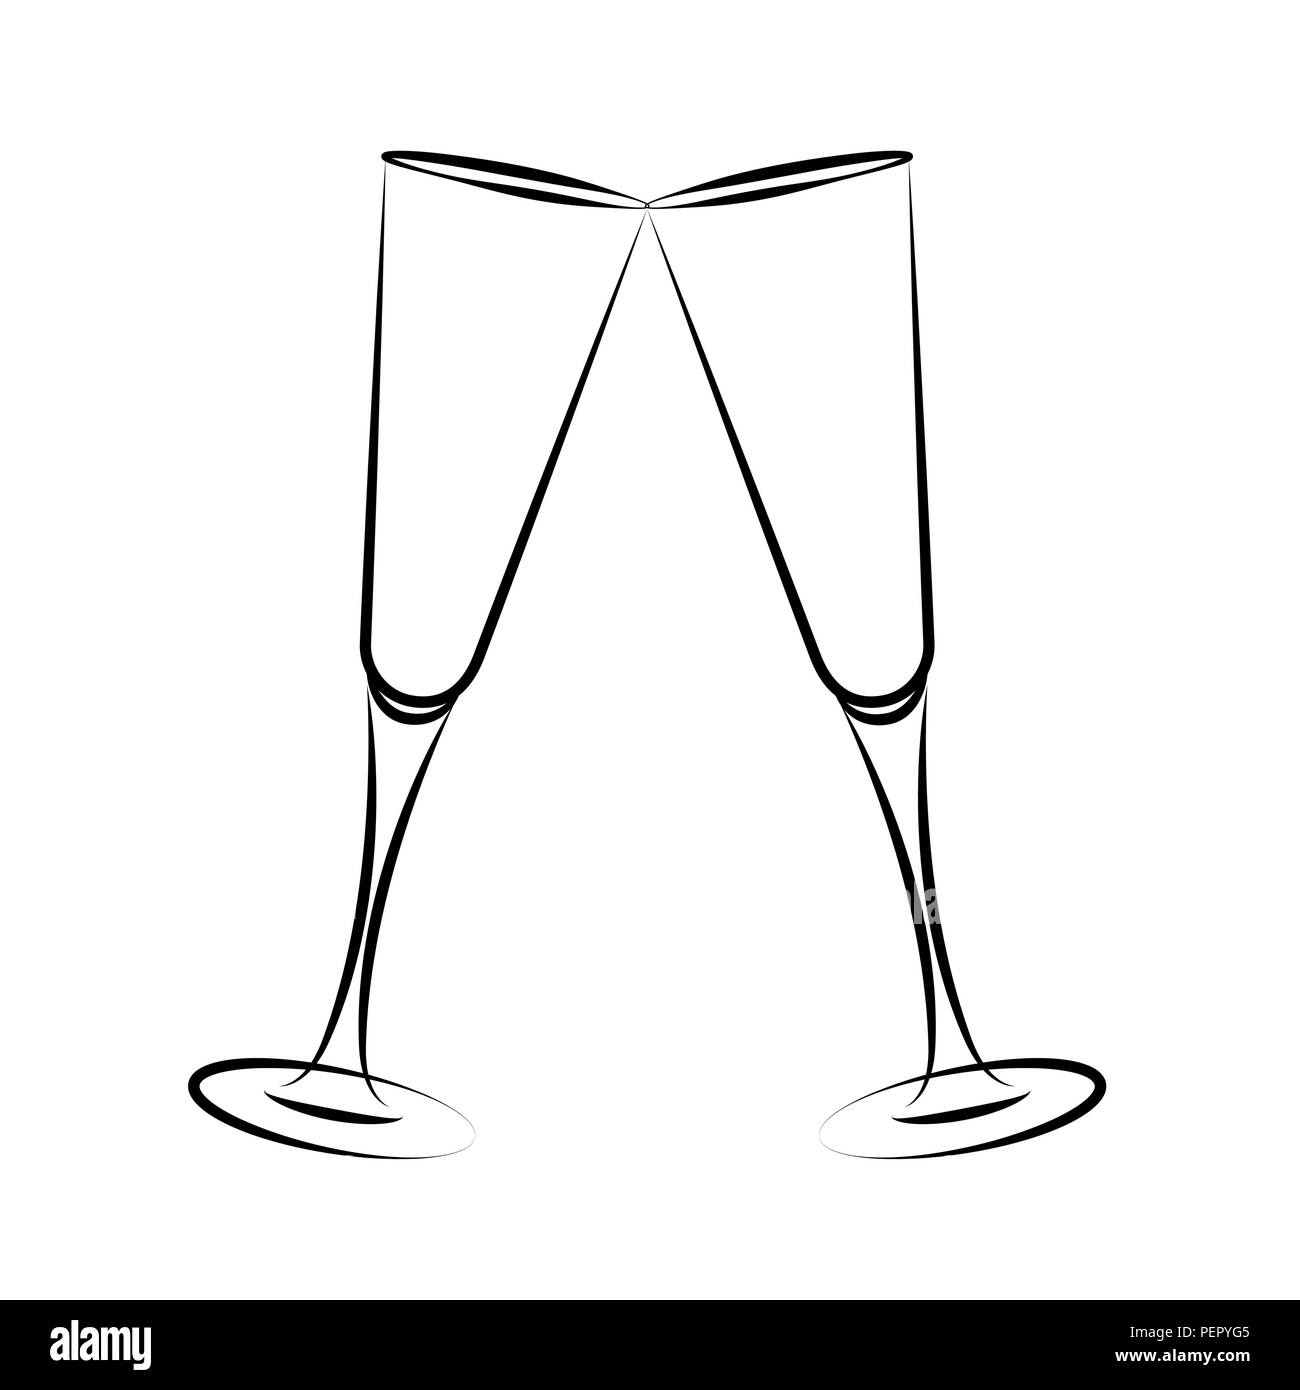 Zwei Gläser Champagner einfache Zeichnung Vektor-illustration EPS 10. Stock Vektor